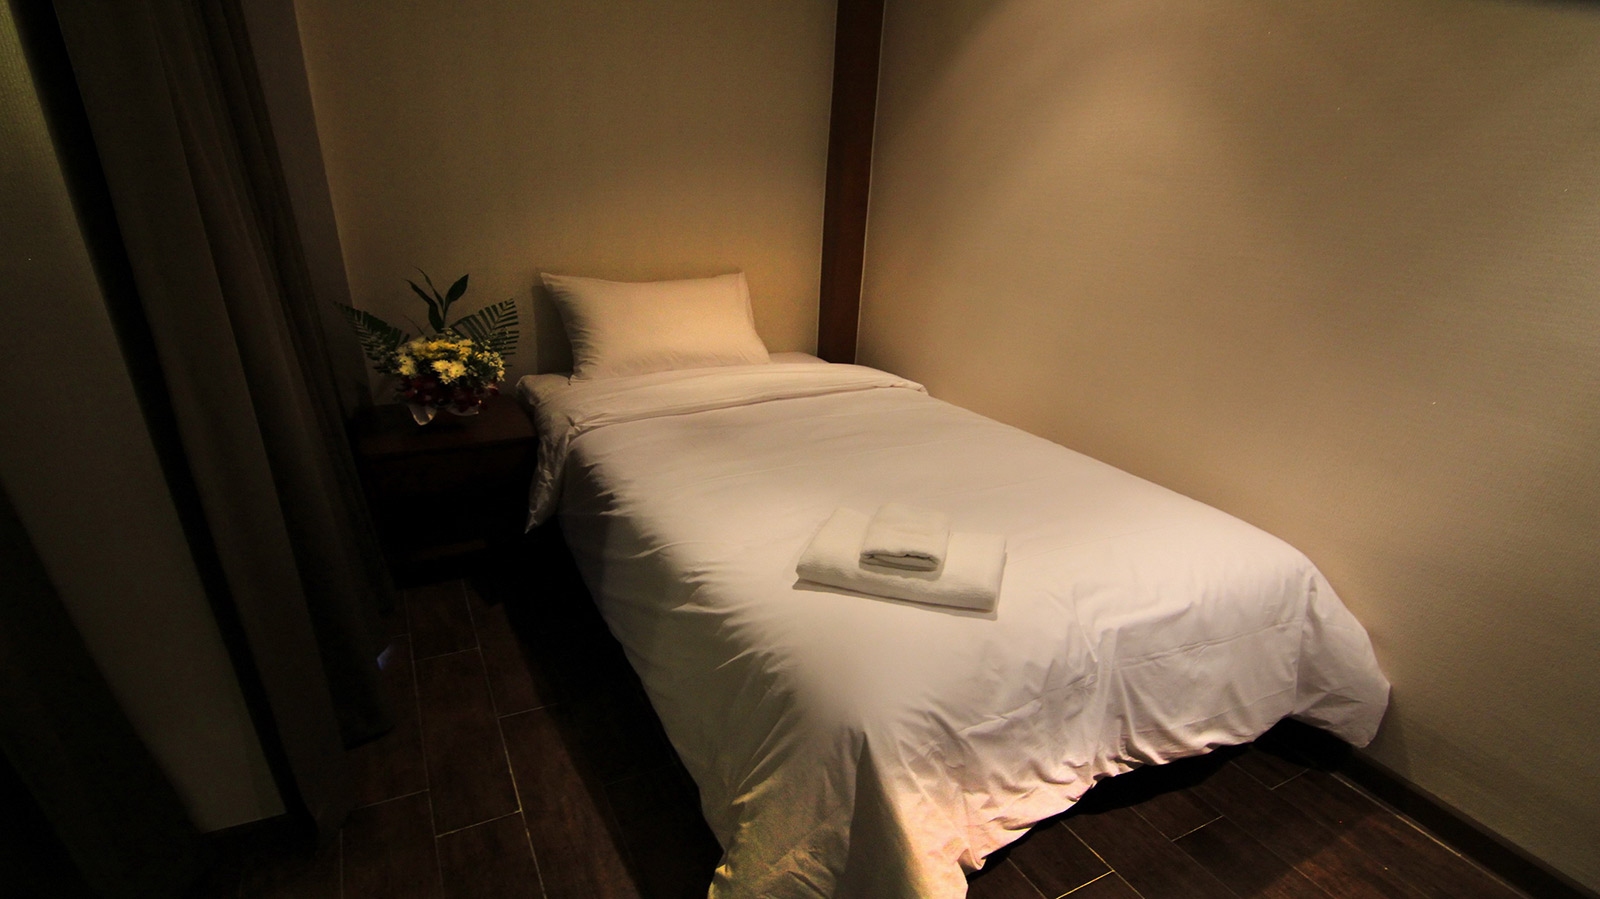 Deluxe - Inn Residence Pattaya